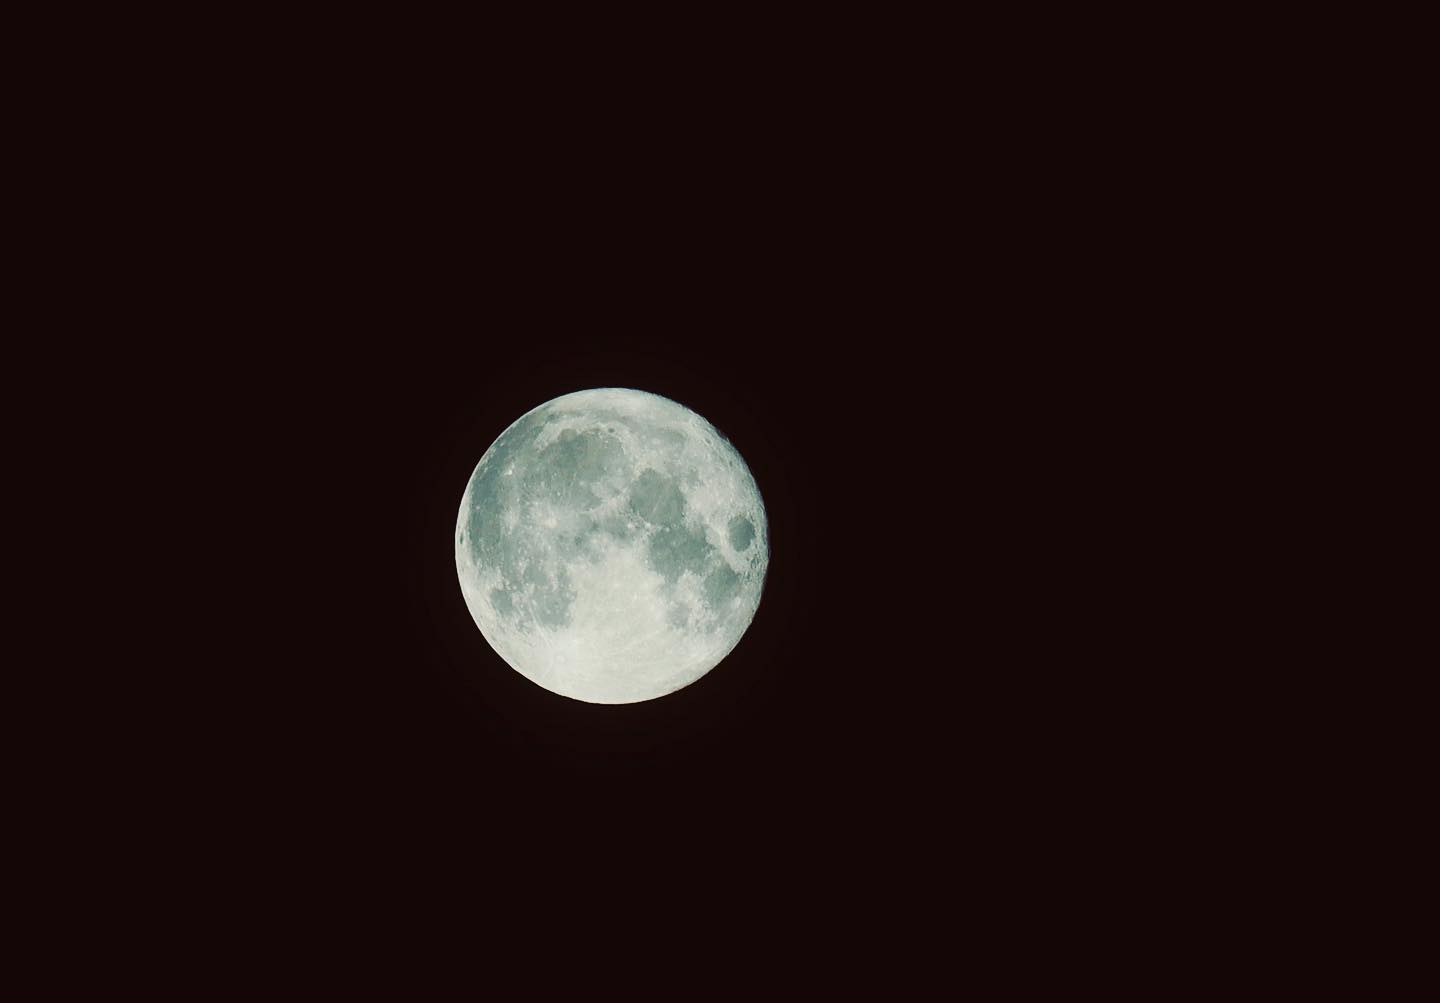 でーたでーた、月が〜♪メダルのような月が〜♪と歌ってみたけど、テレビを観ない人なので開催しとる以上の事は何も知らんかったりして。。。#満月